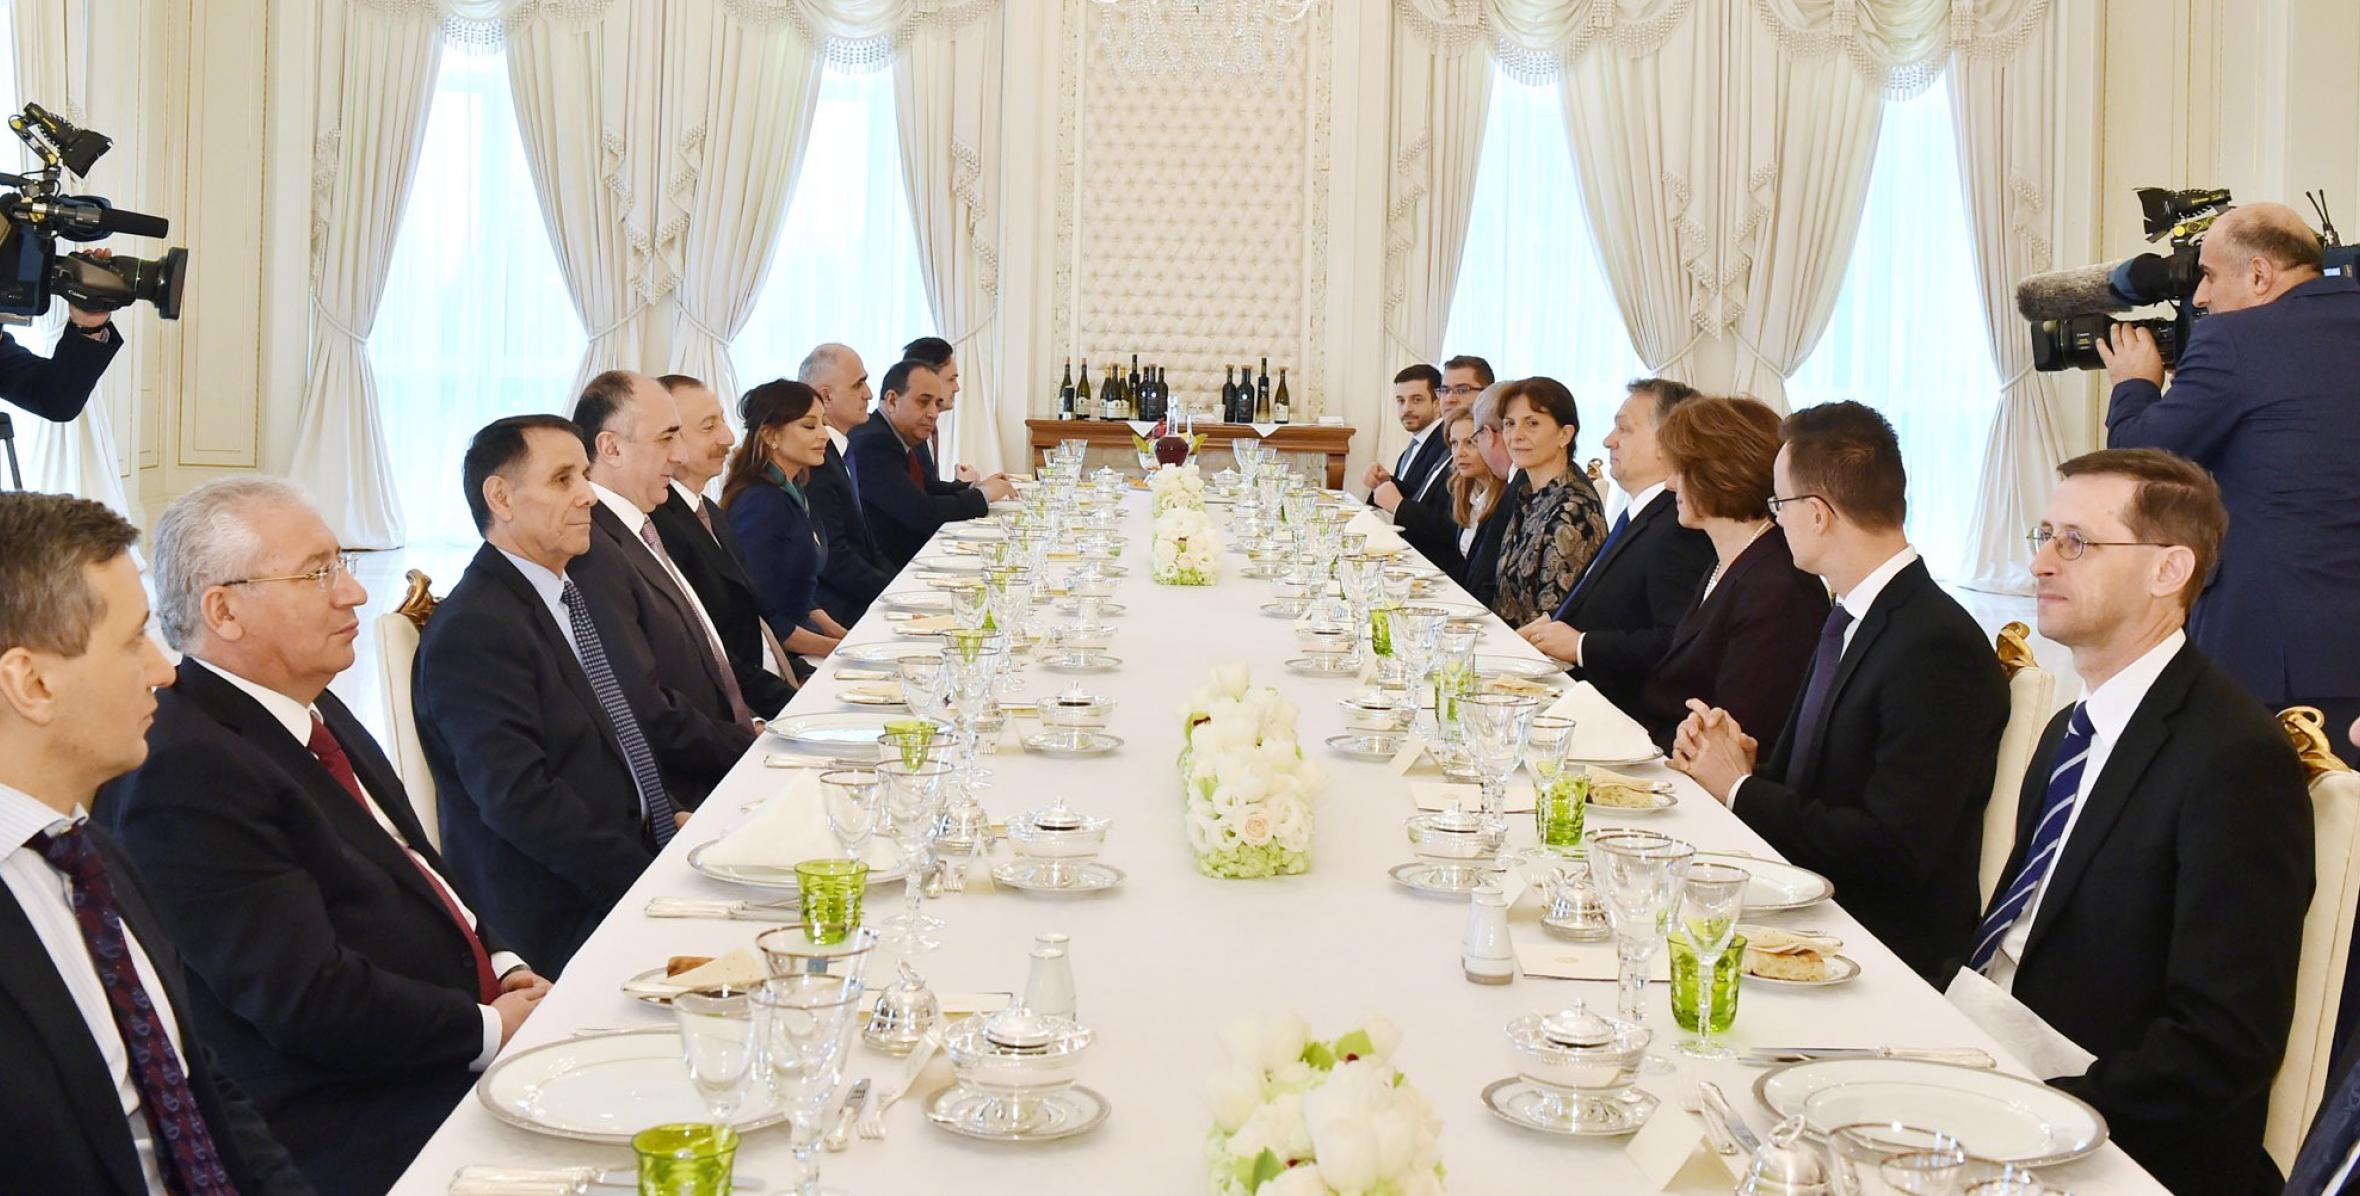 Oт имени Ильхама Алиева и его супруги Мехрибан Алиевой был дан обед в честь премьер-министра Венгрии Виктора Орбана и его супруги Анико Леваи